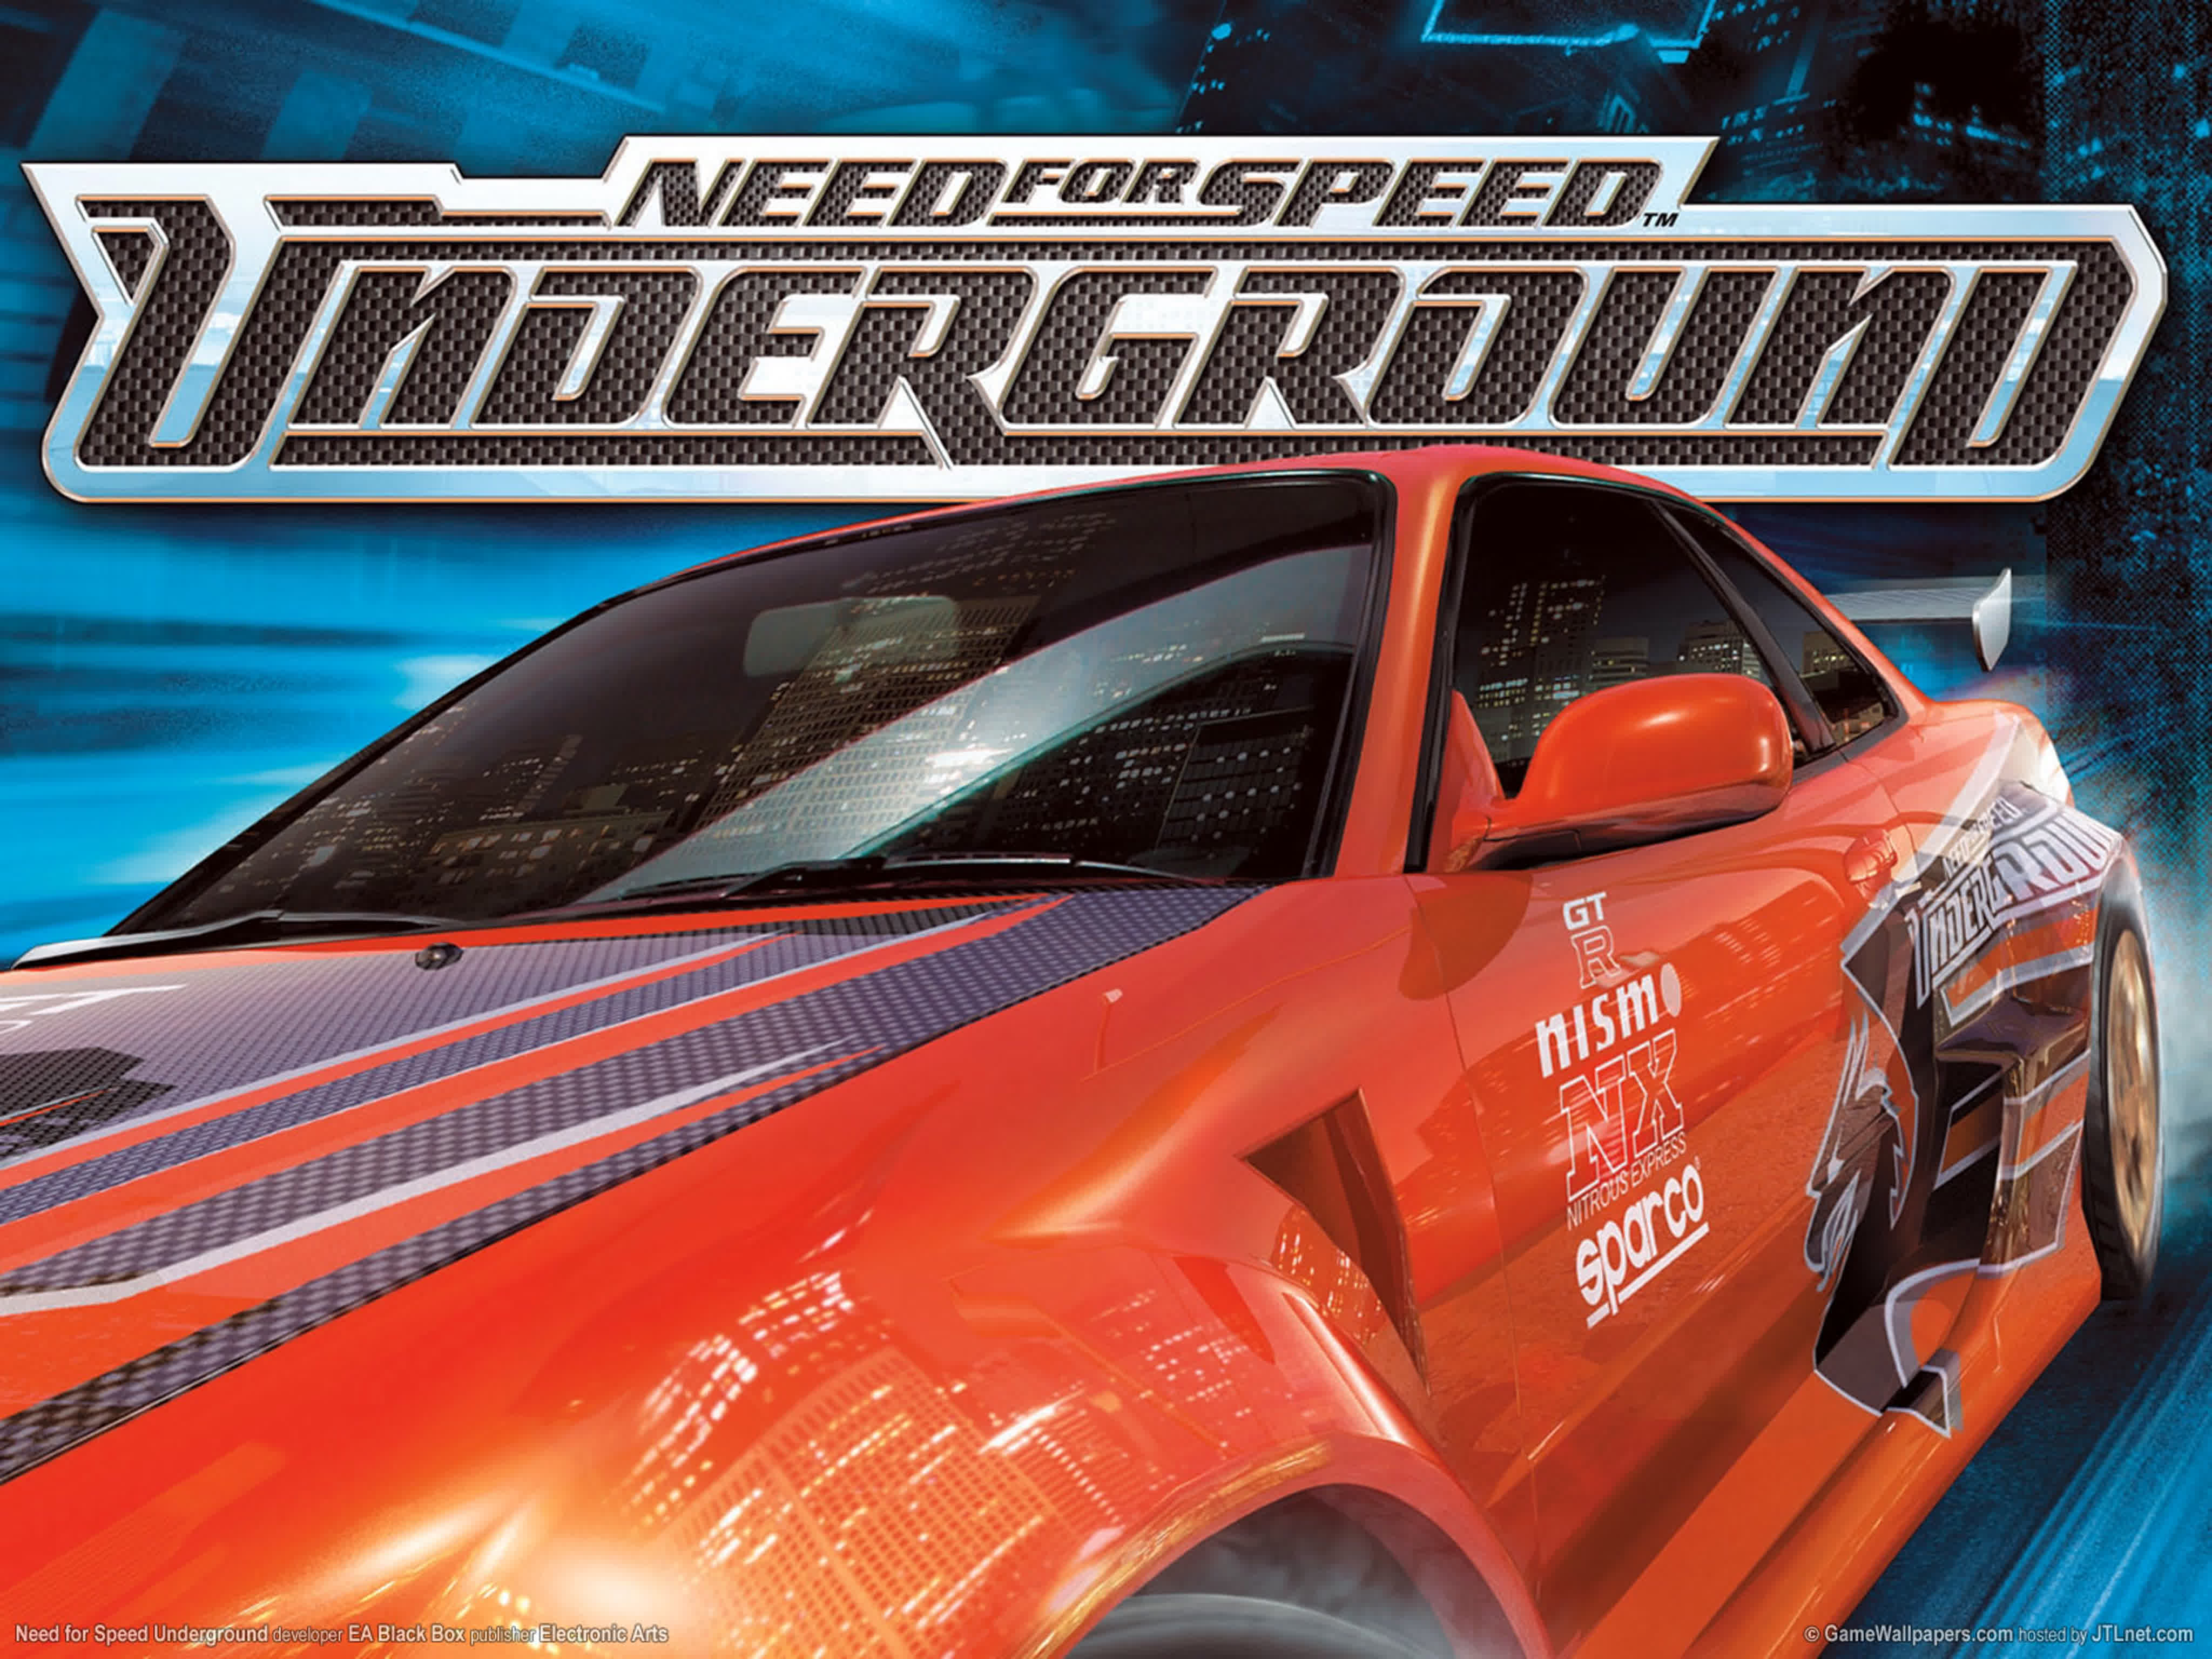 Играть 1 трек. Need for Speed Underground 1. Need for Speed Underground 2003 обложка. Need for Speed Underground 1 обложка. Need for Speed андеграунд 1.